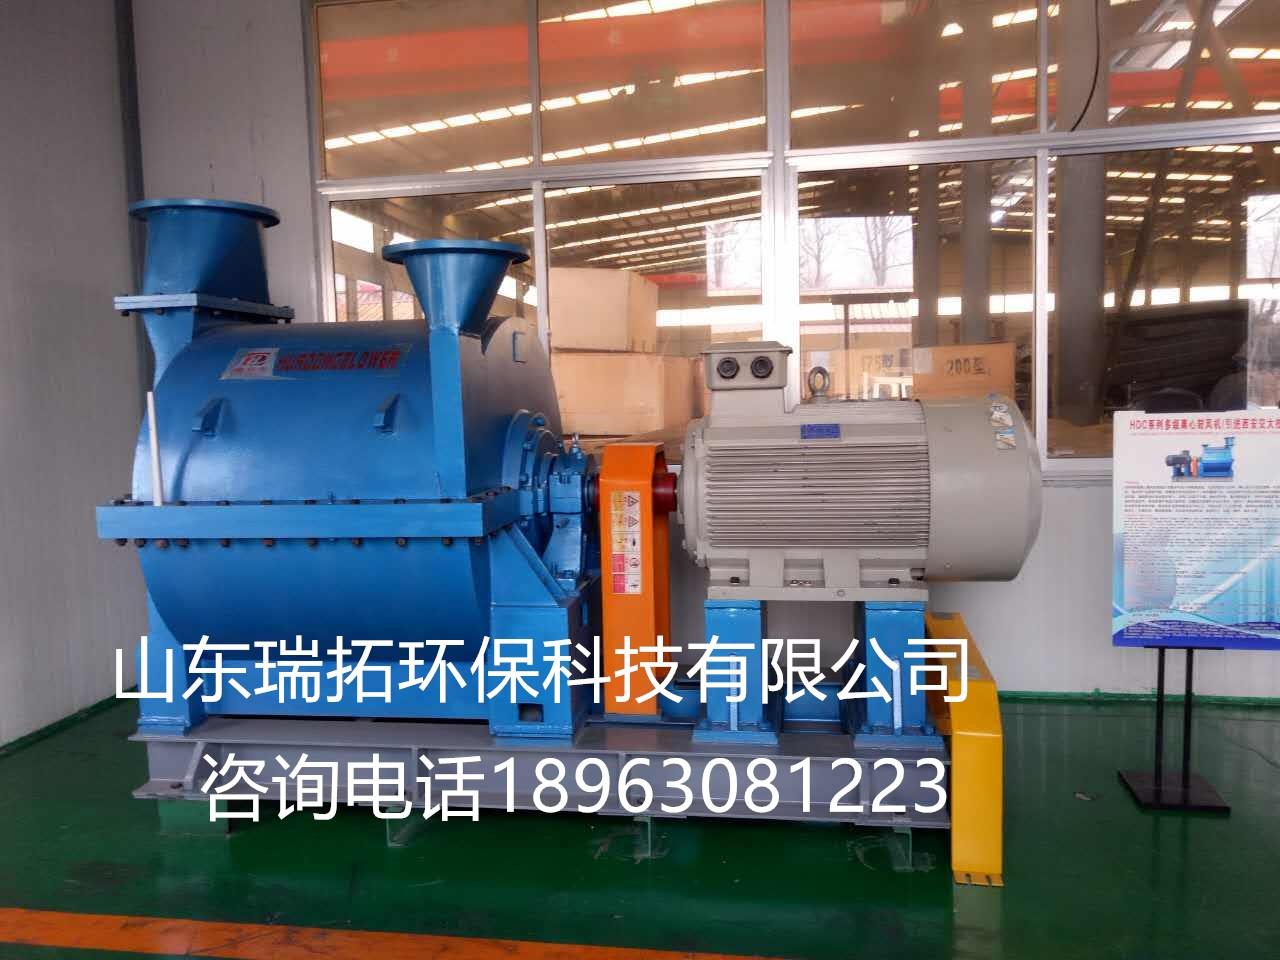 江苏省污水出炉罗茨风机|江苏省污水处理曝气风机